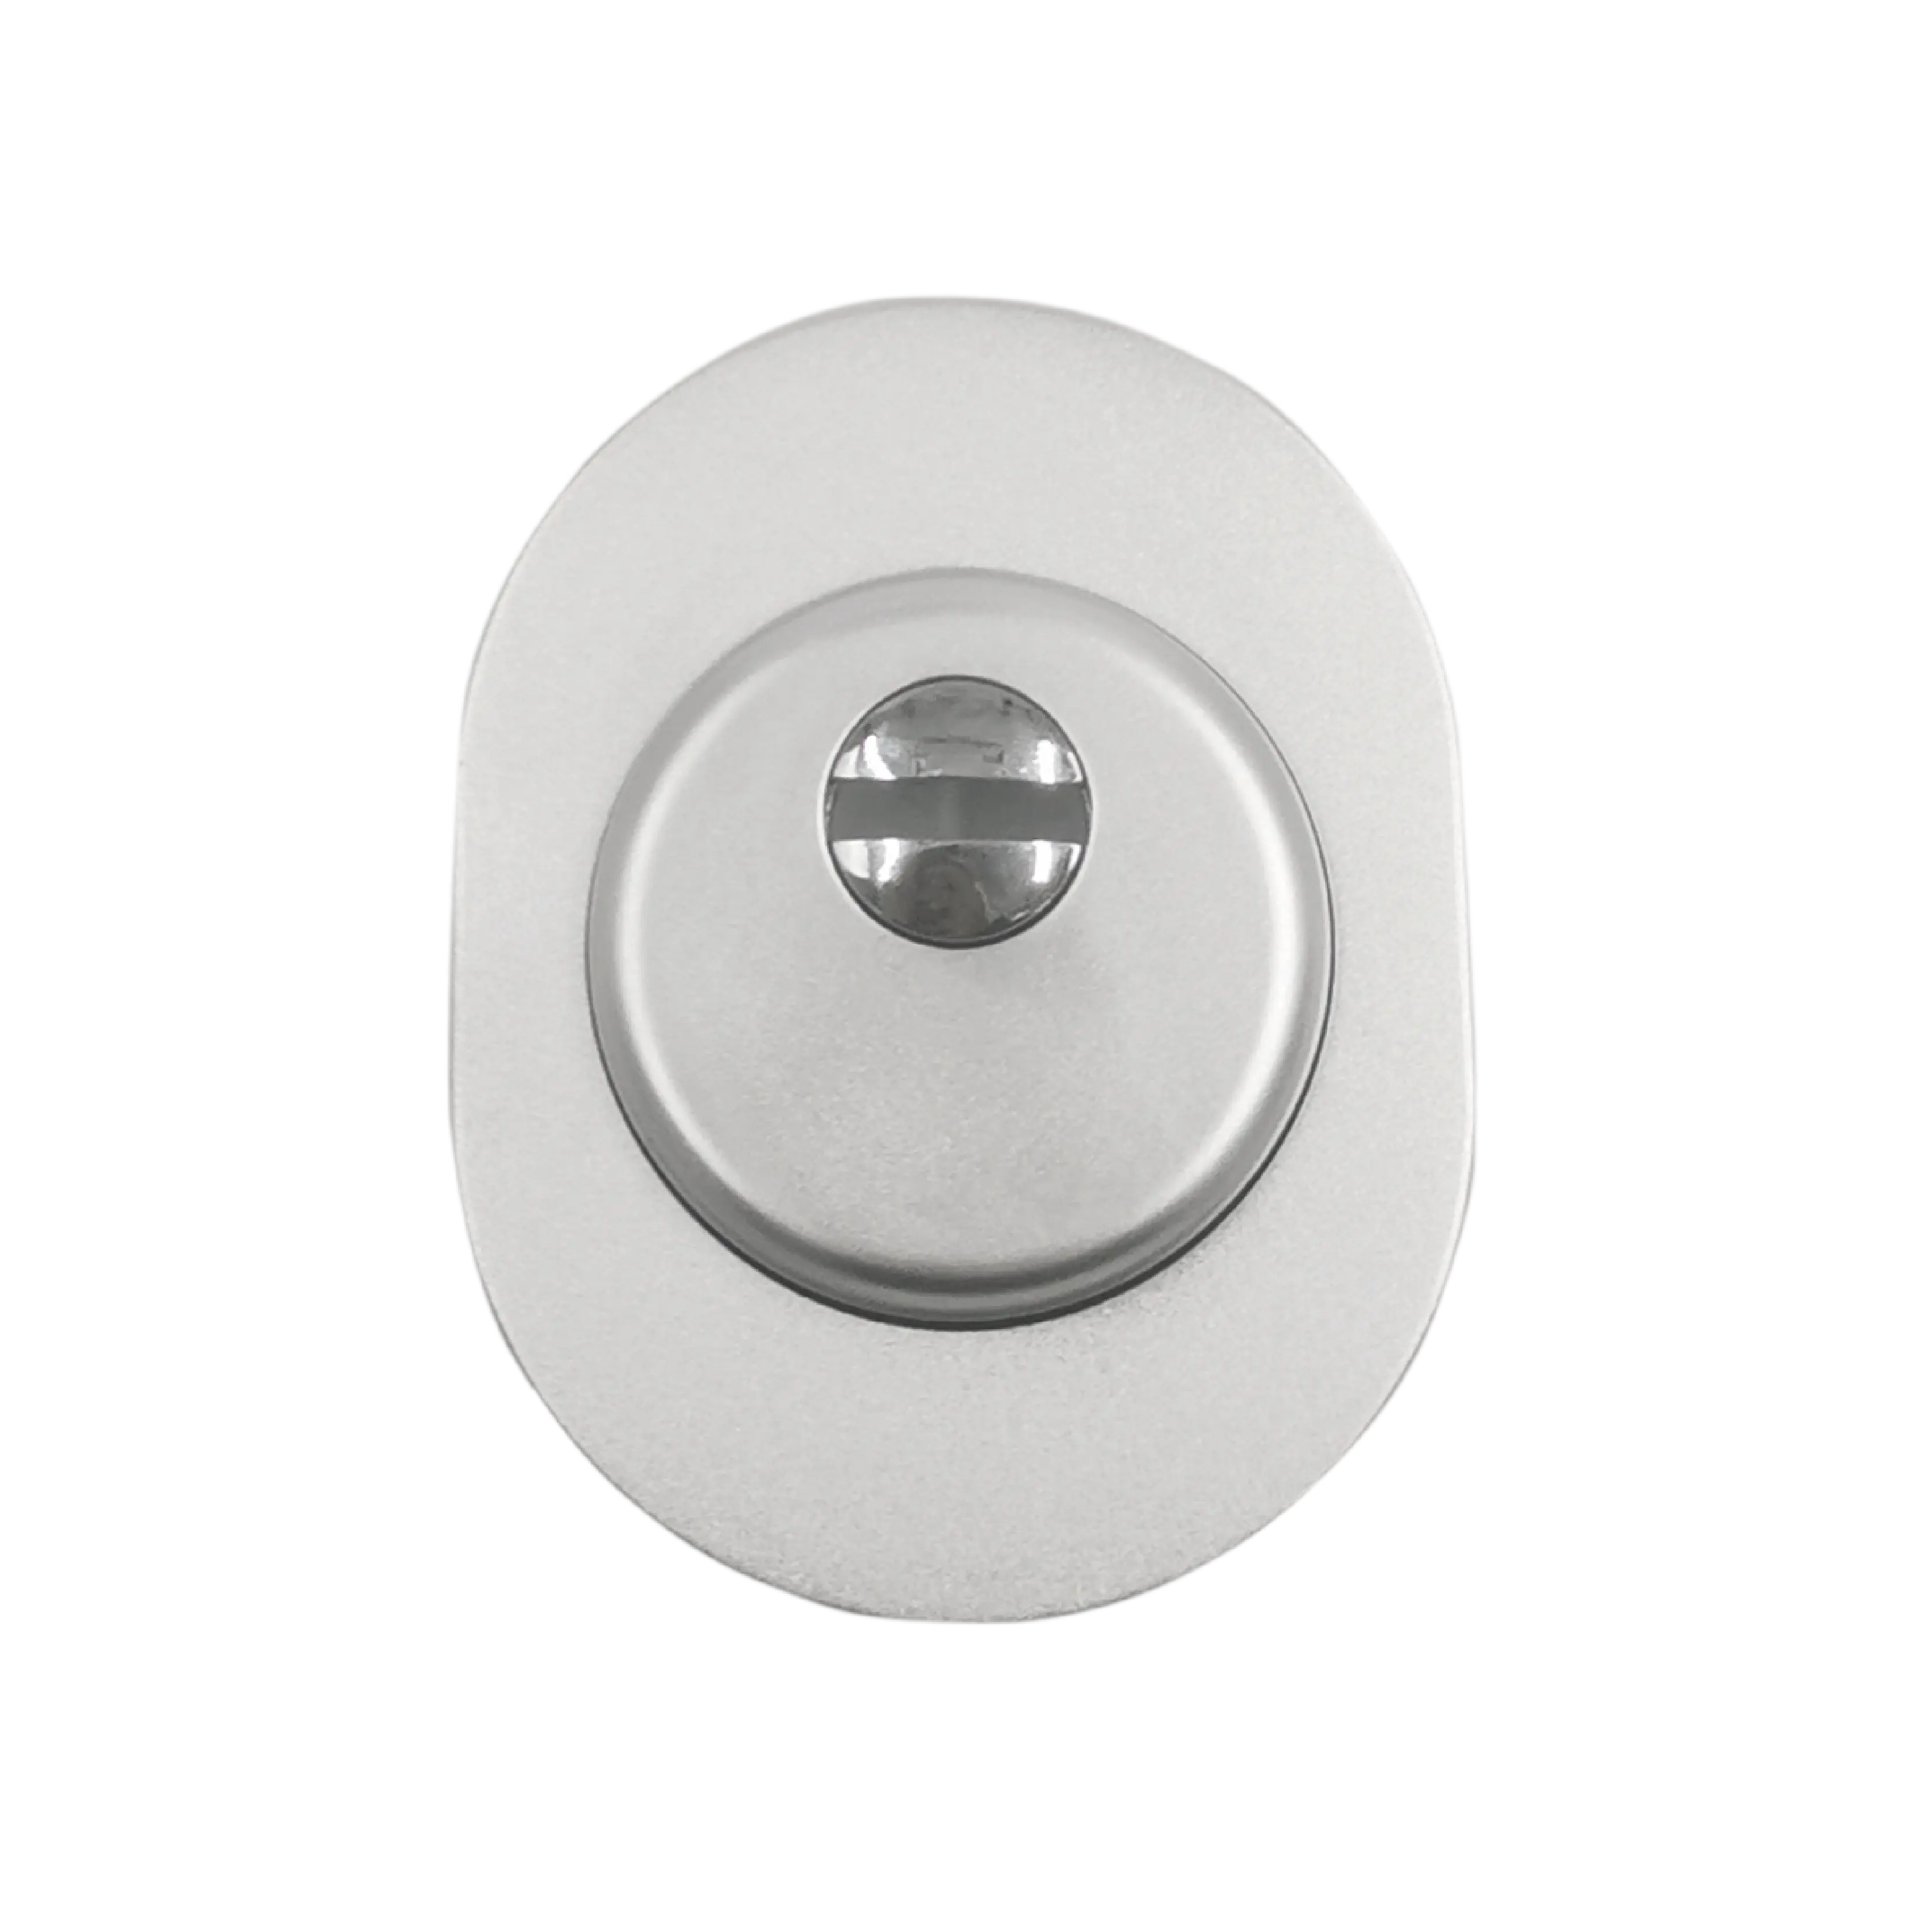 유로 단면도 안전 문 장붓 구멍 자물쇠 열쇠 구멍 덮개를 위한 알루미늄 자물쇠 보호자 escutcheon 판 보호